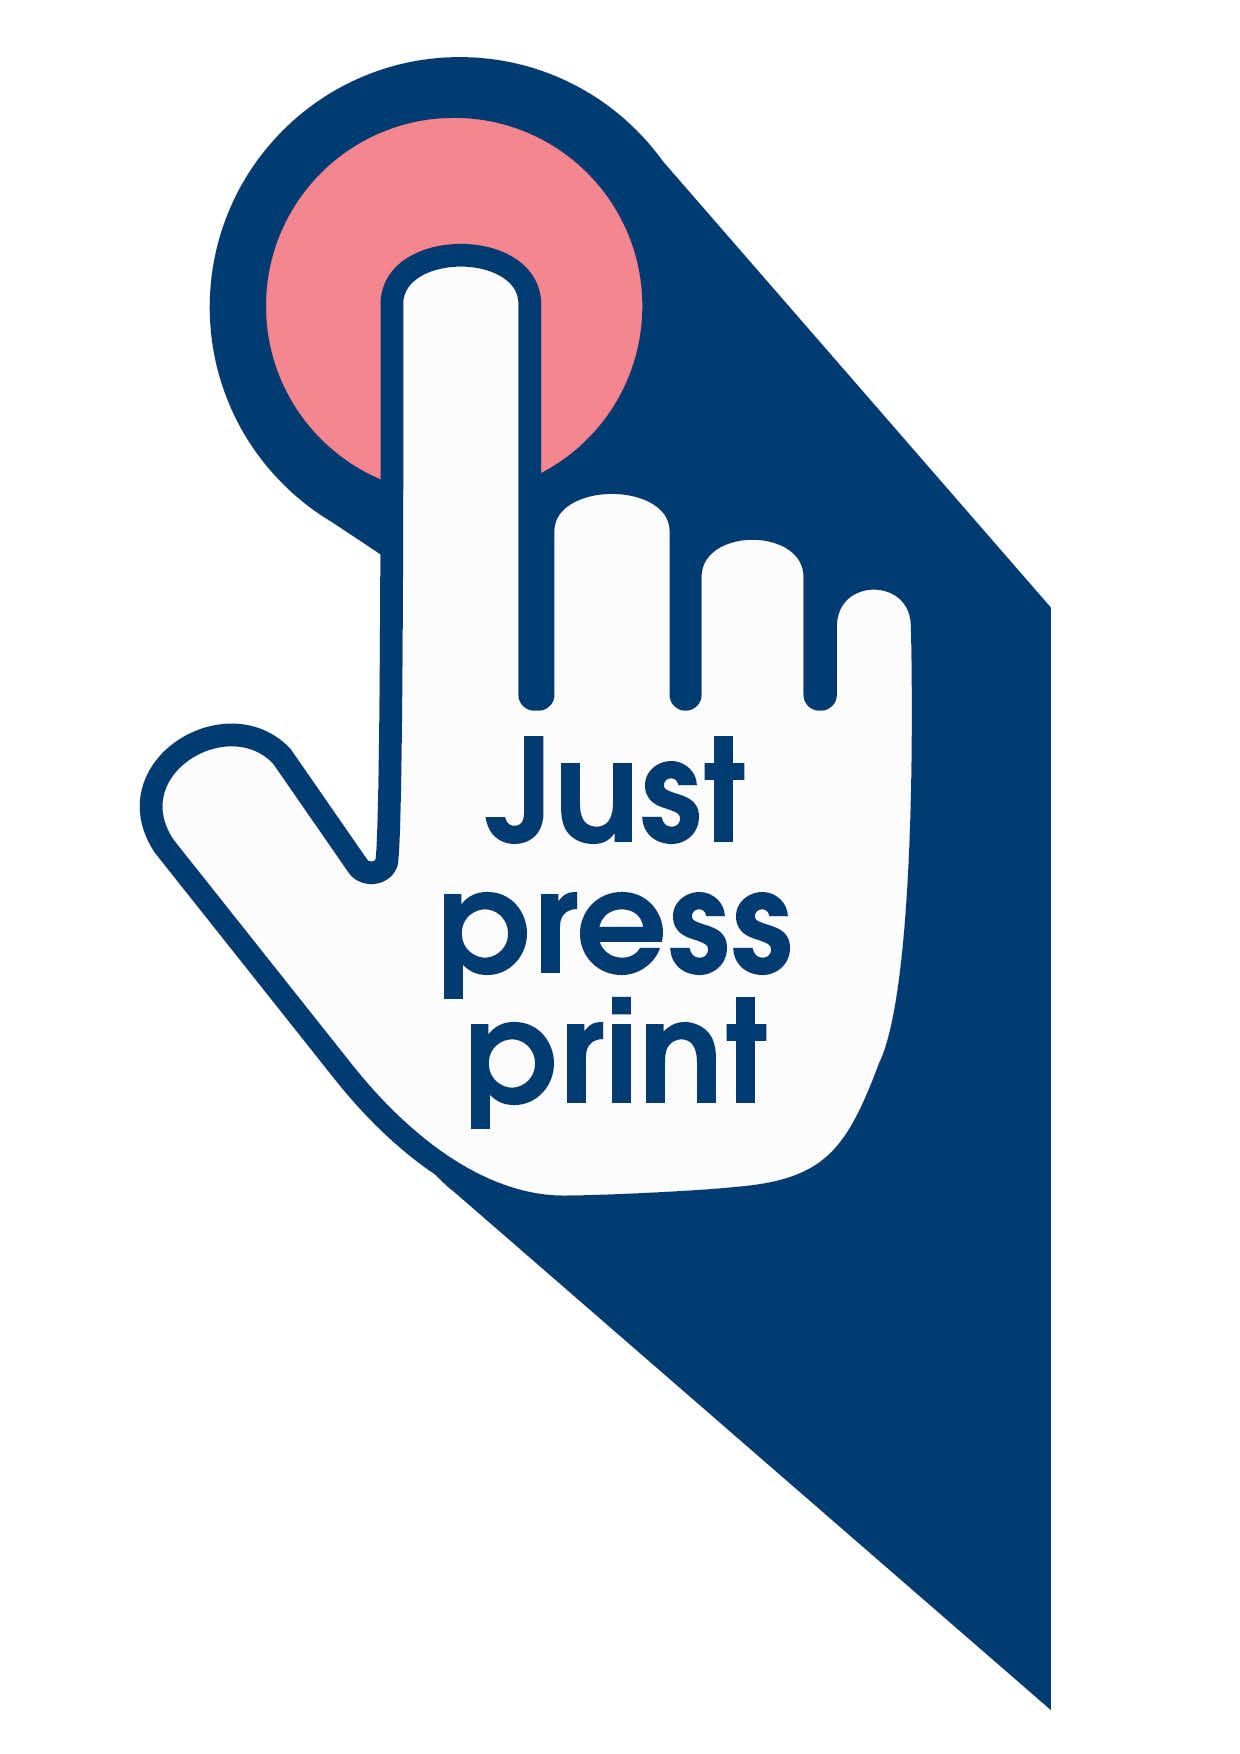 Just press